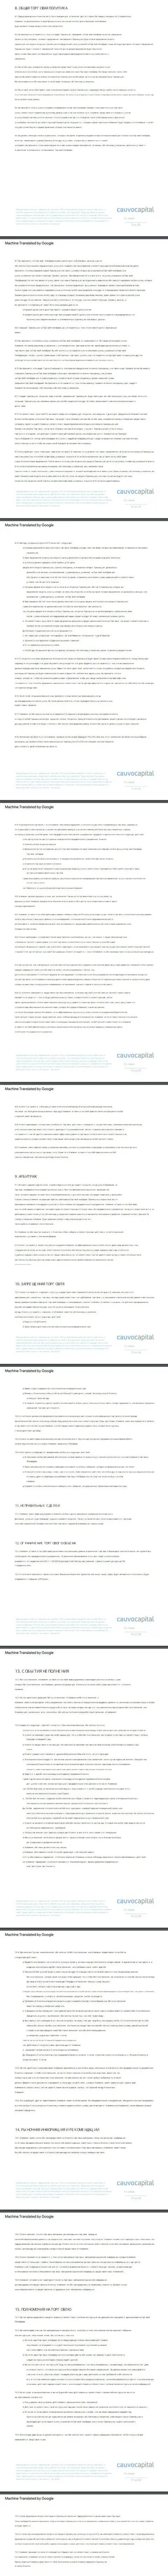 Часть 2 соглашения компании CauvoCapital